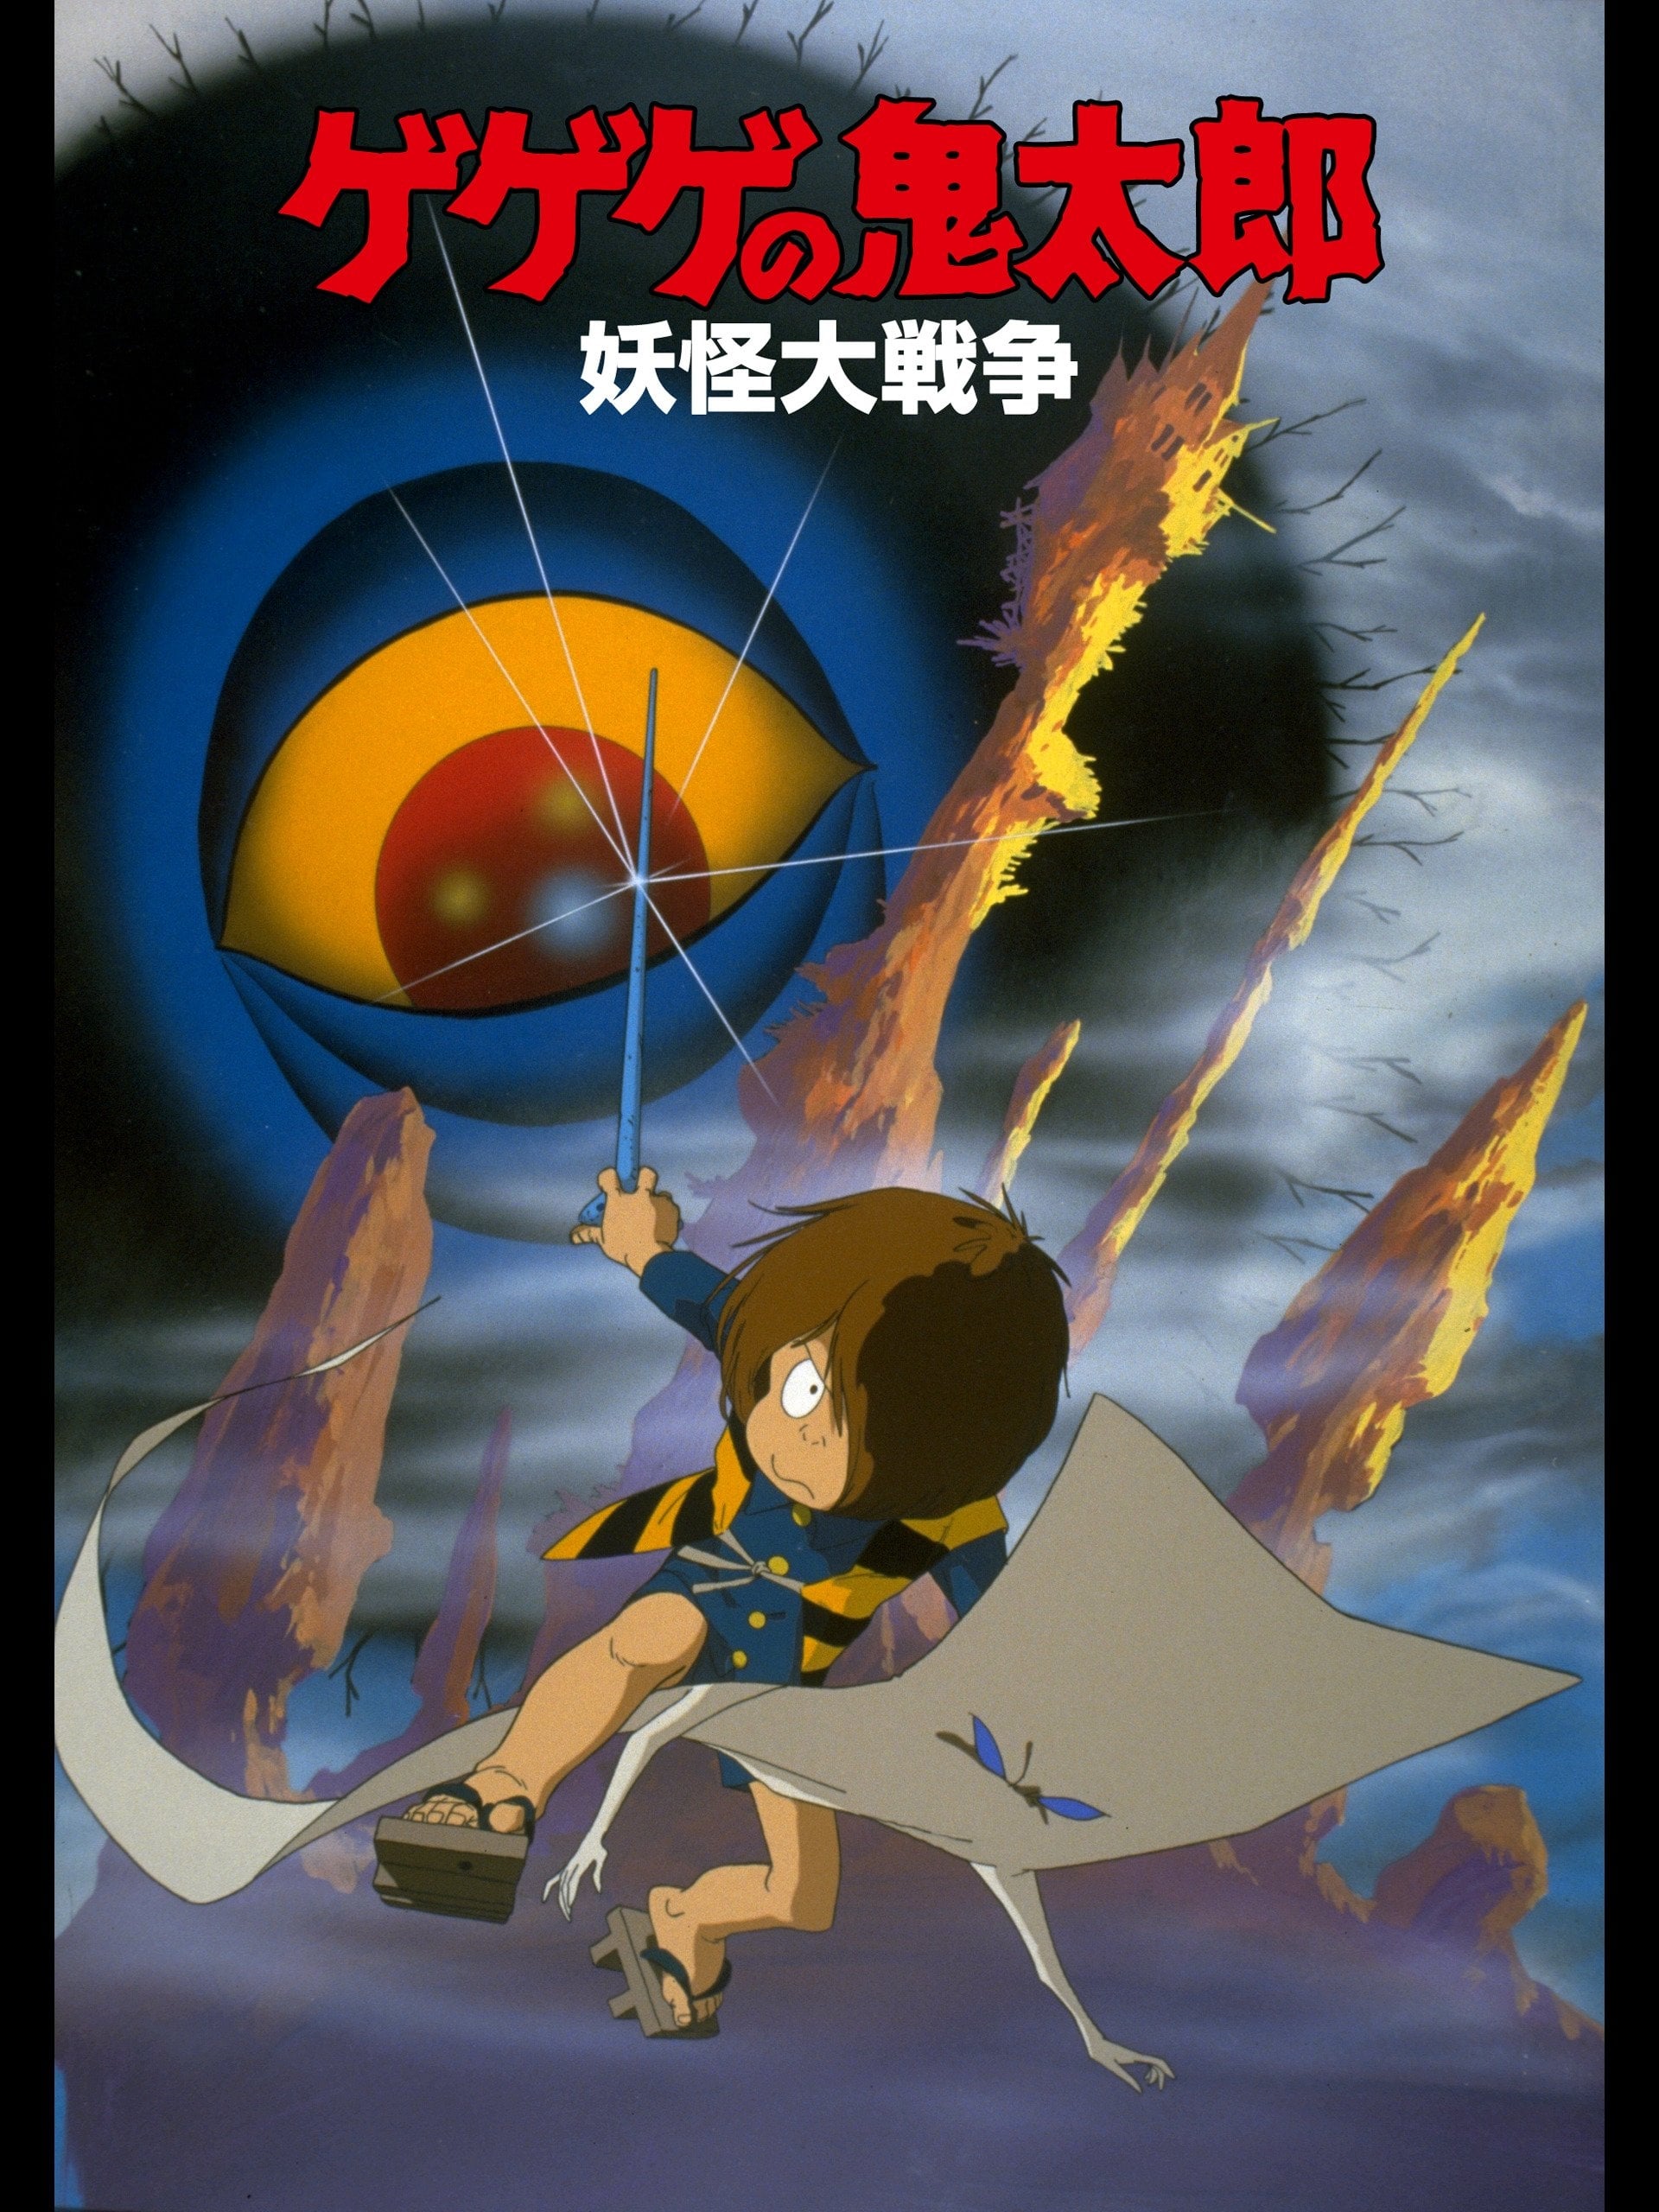 Spooky Kitaro: The Great Yokai War